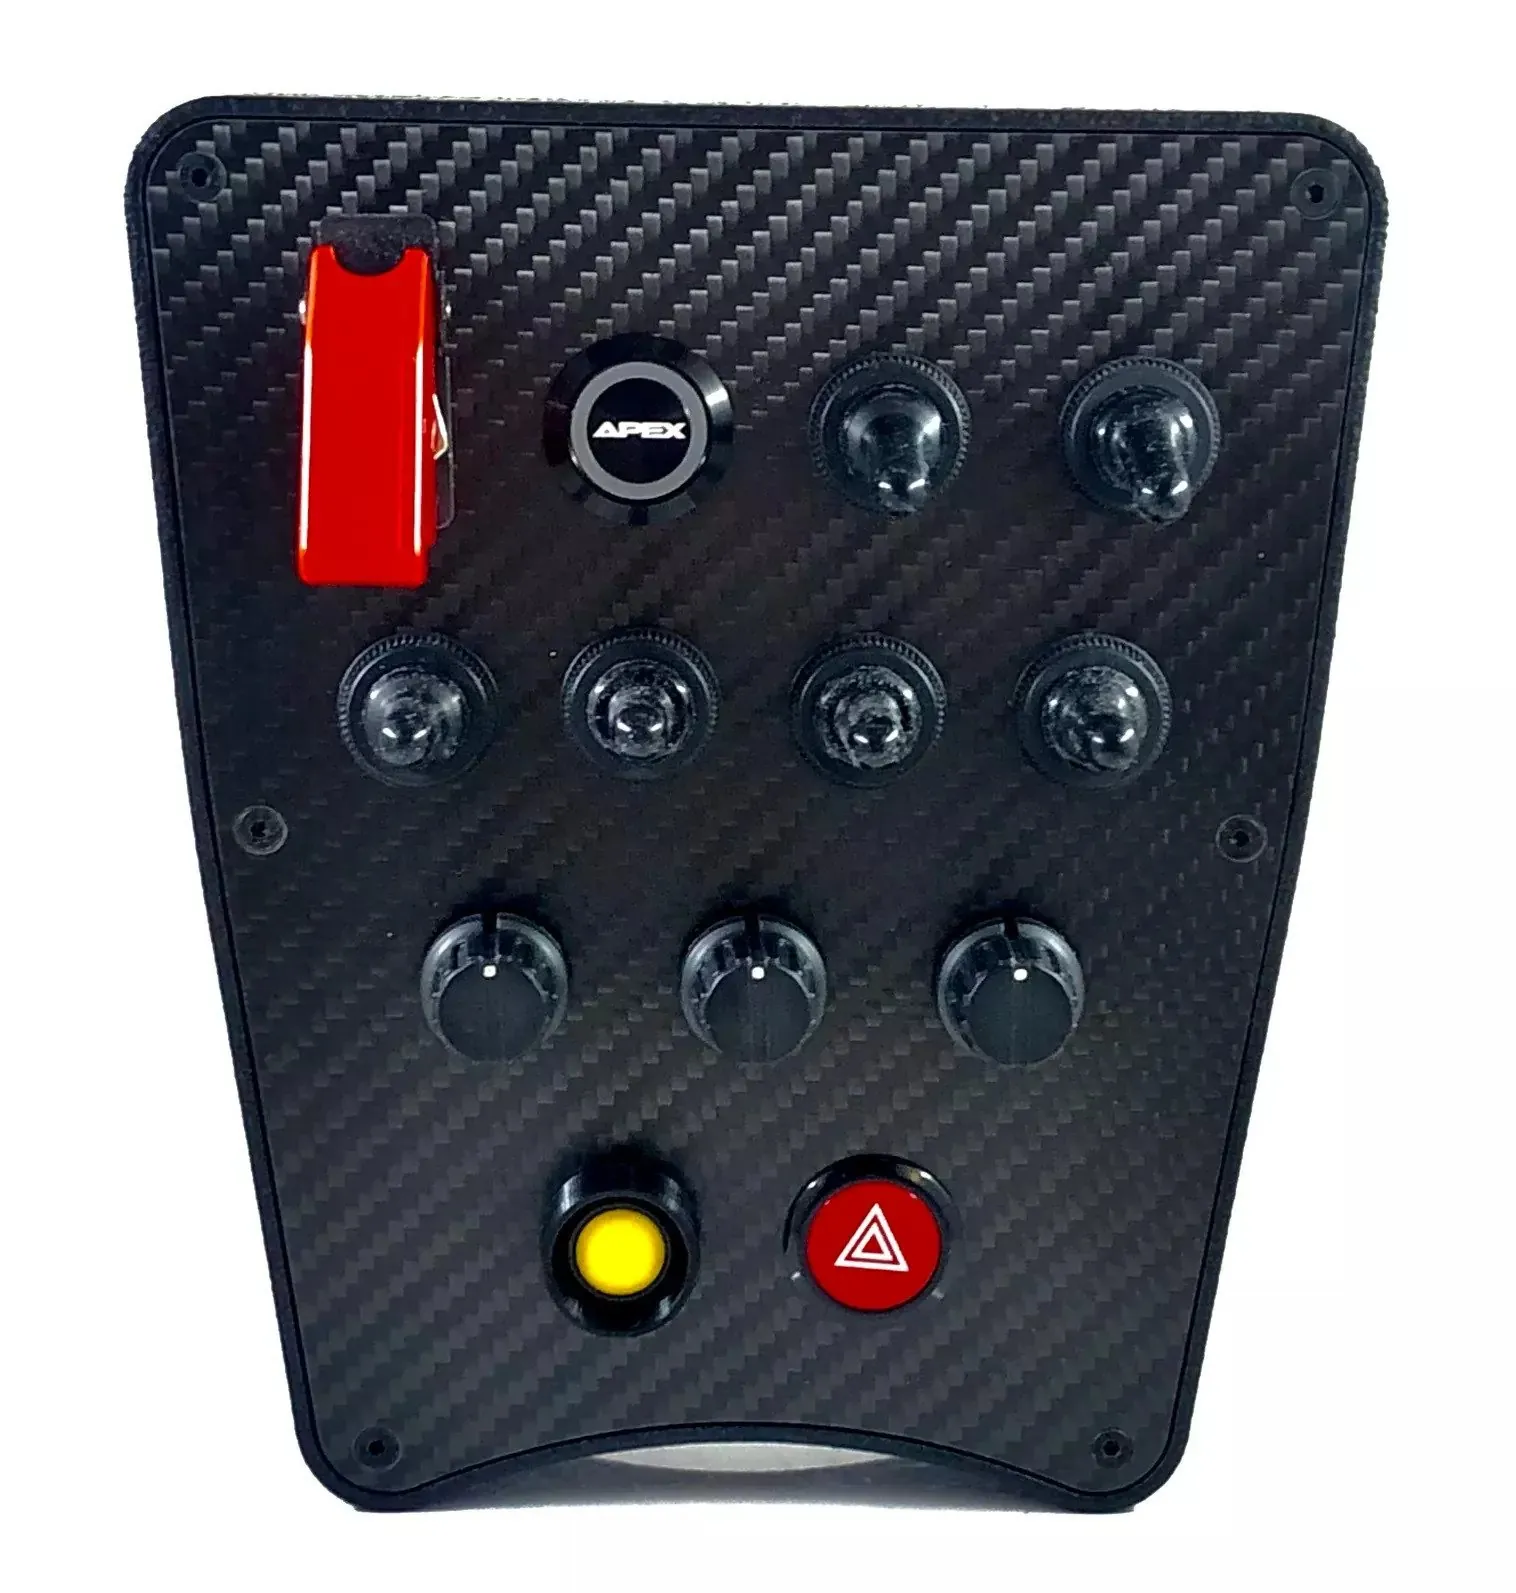 Apex P911 Button Box